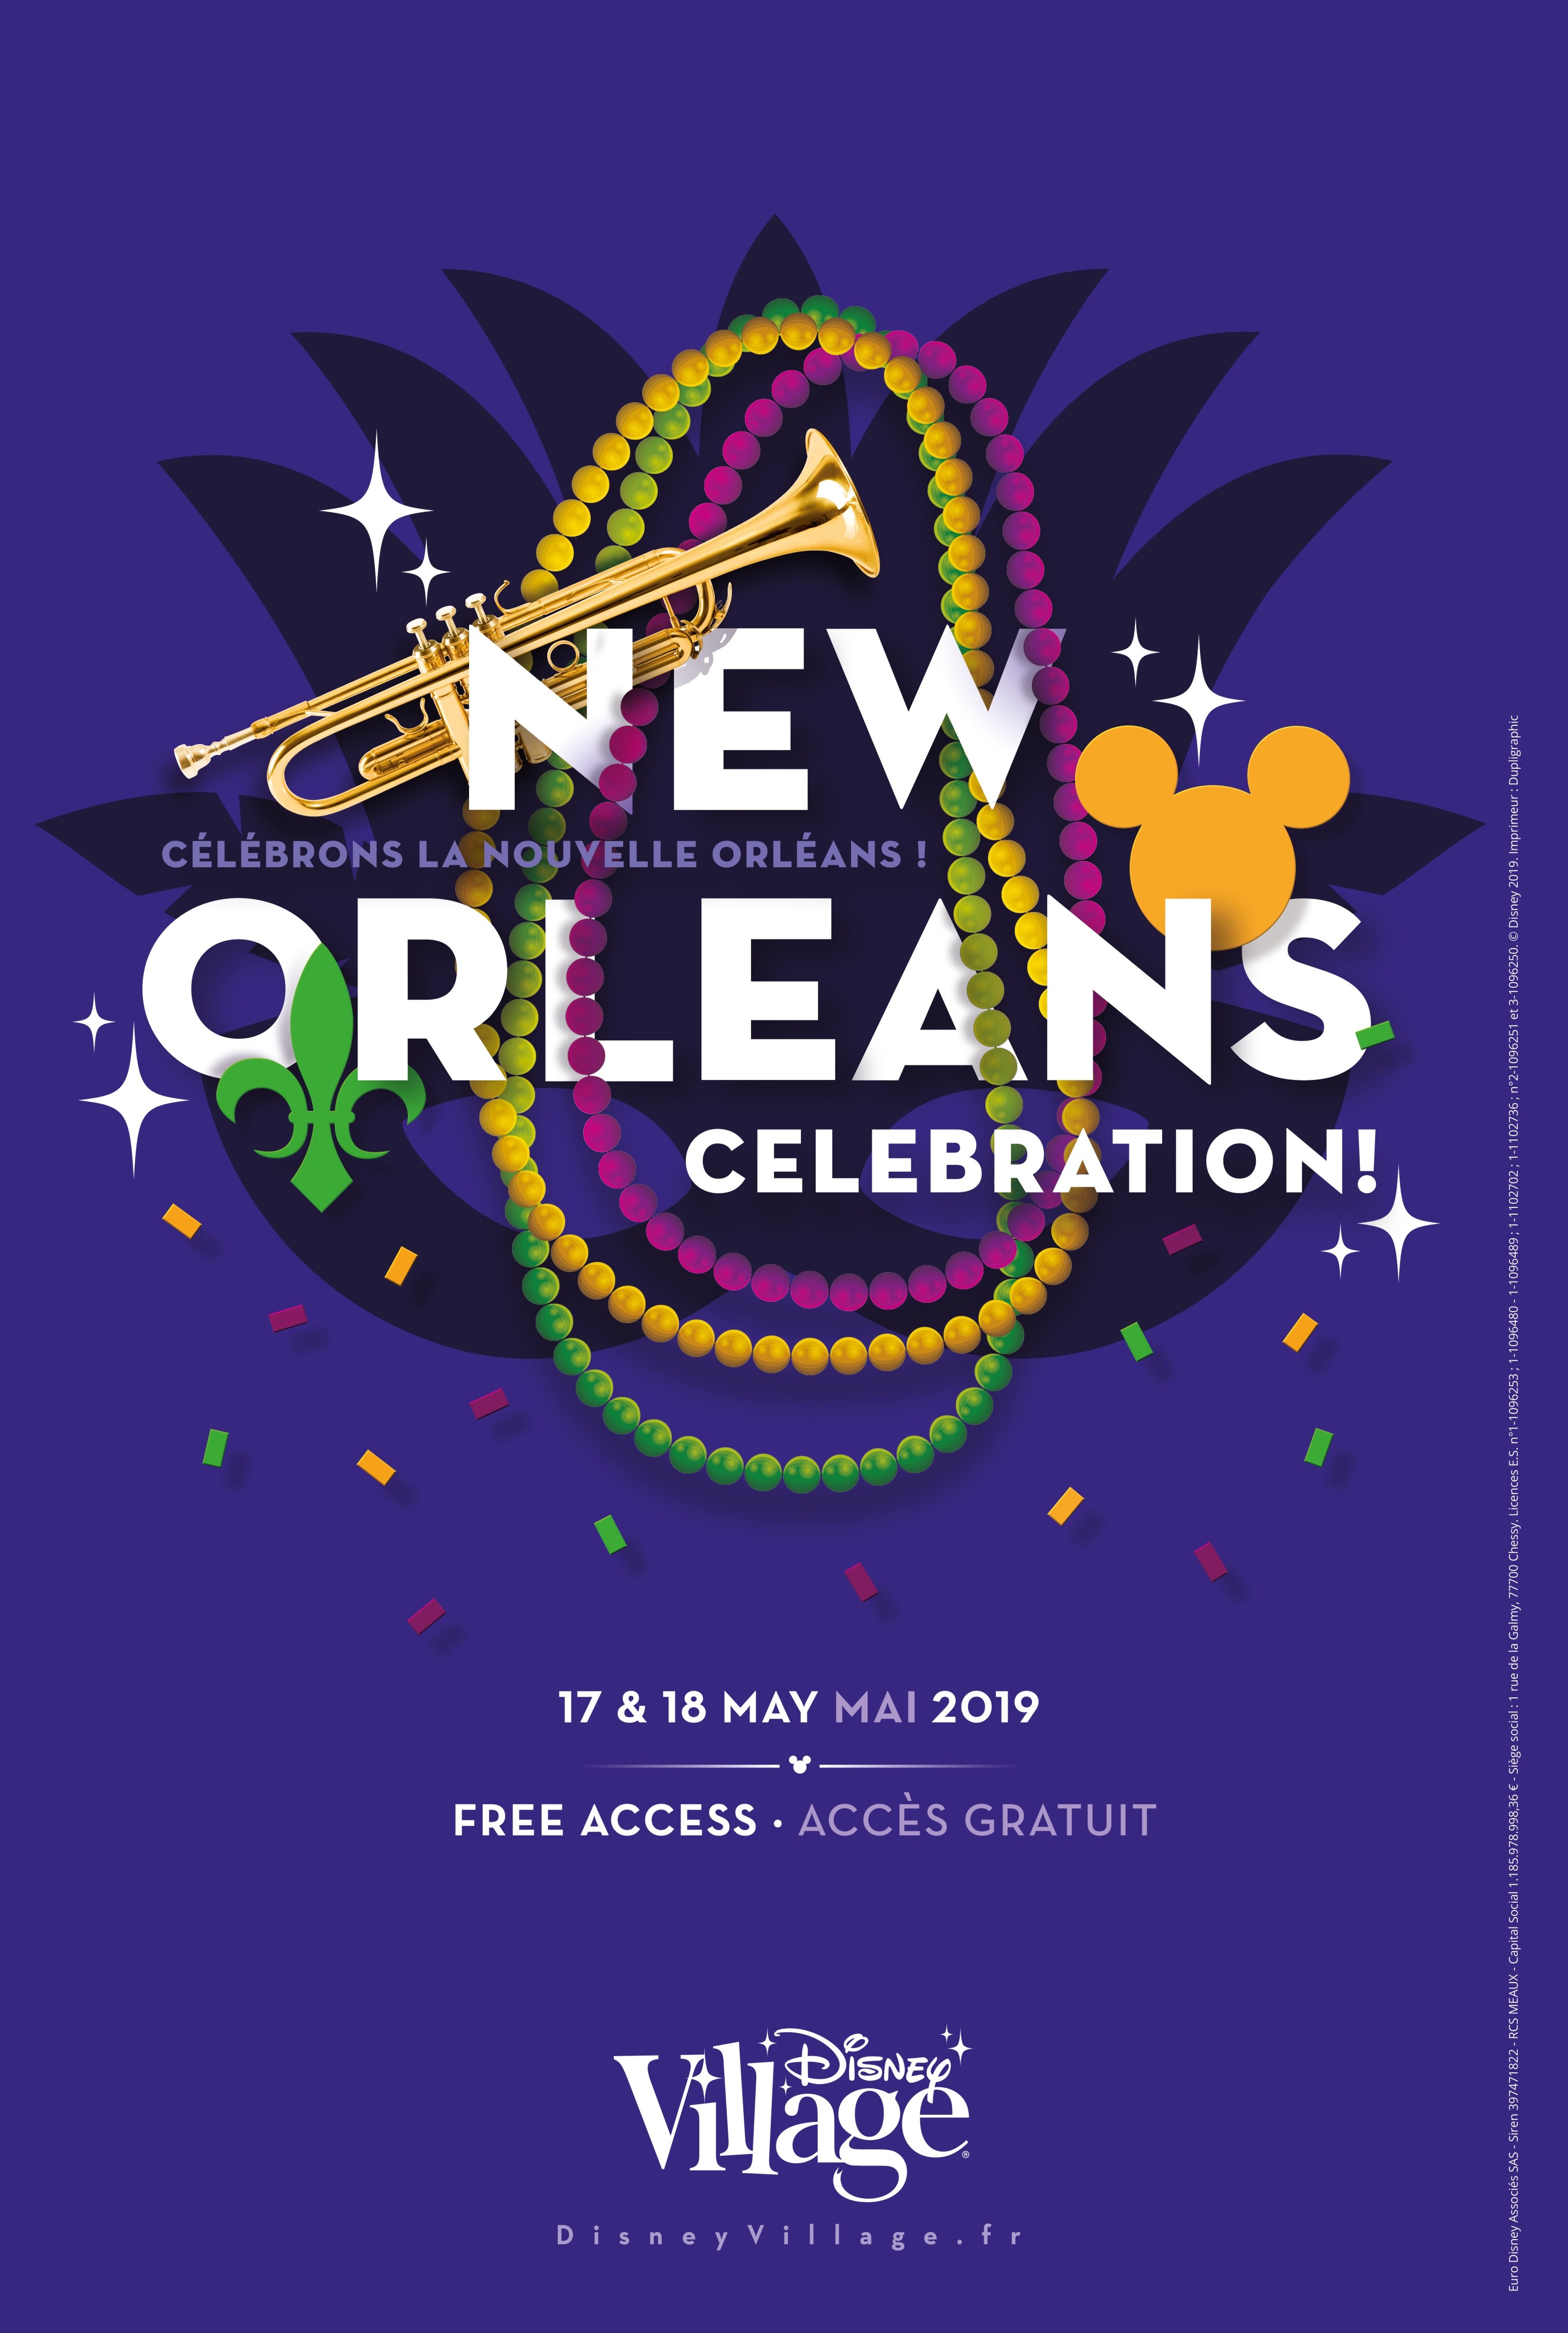 New Orleans Celebration Returns!